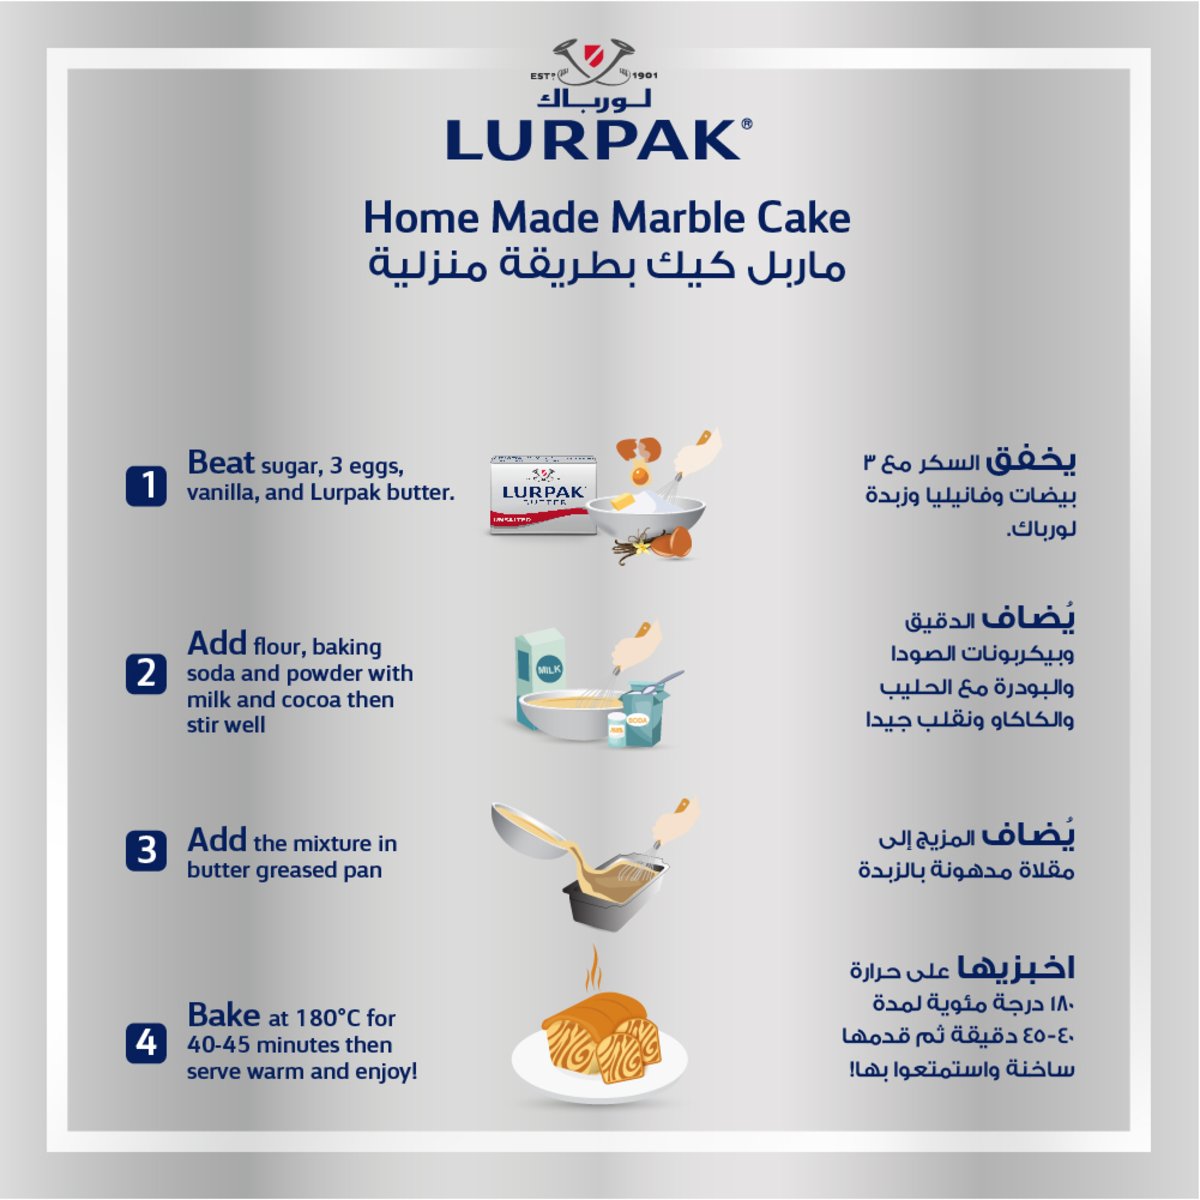 Lurpak Butter Block Unsalted 100g